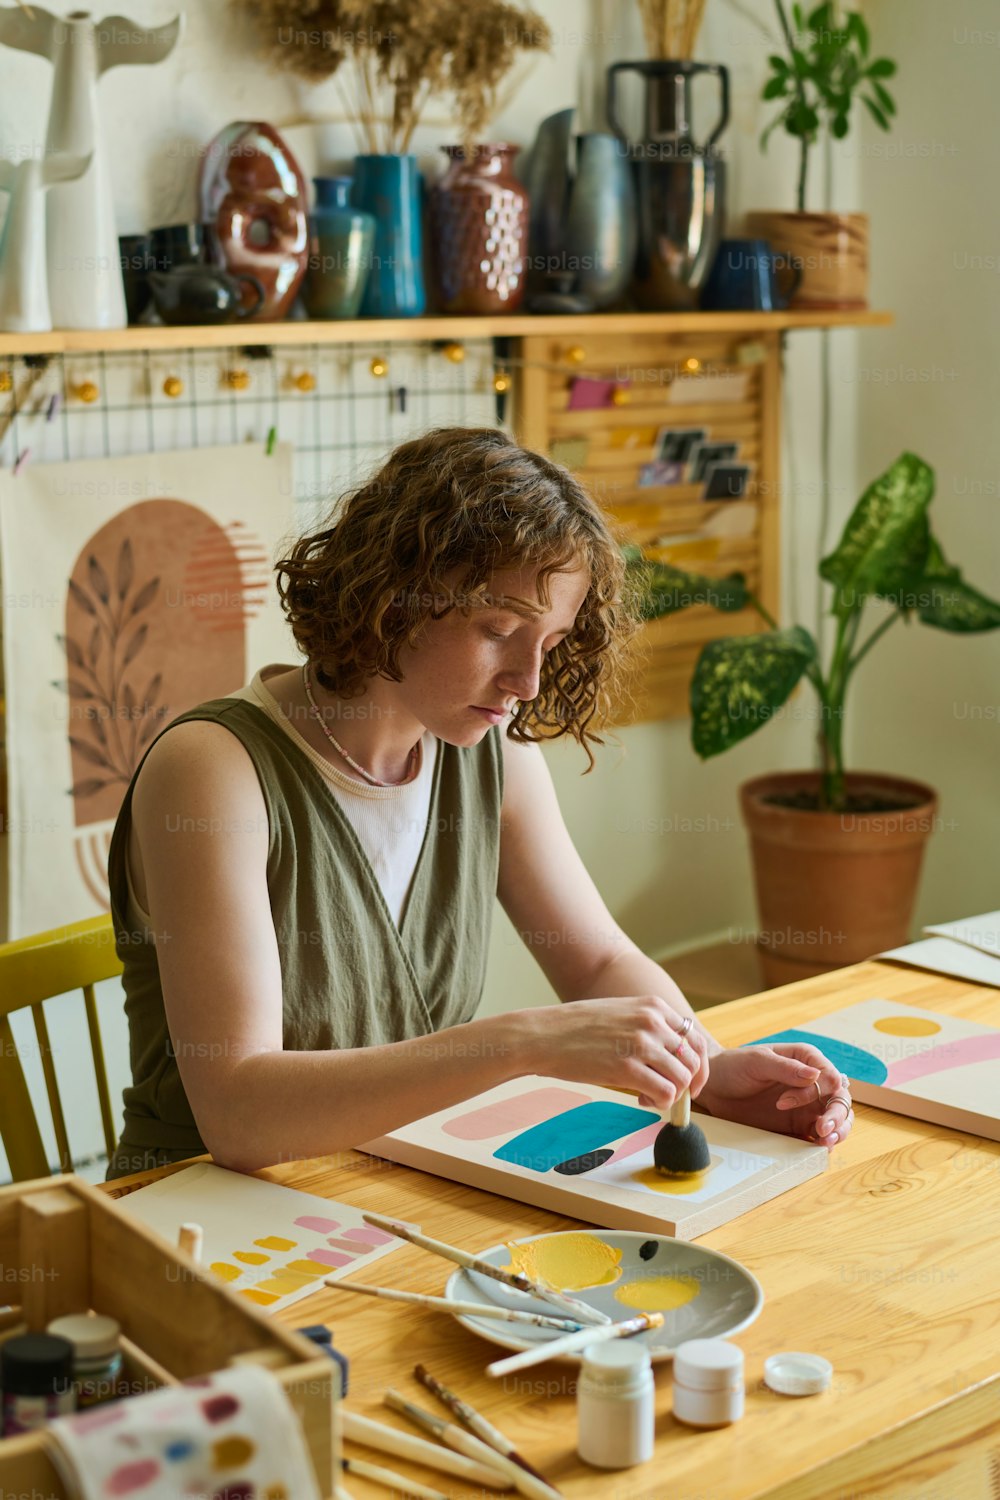 Artista feminina criativa em casualwear usando esponja para aplicar cor no papel enquanto trabalha sobre a nova pintura abstrata na oficina